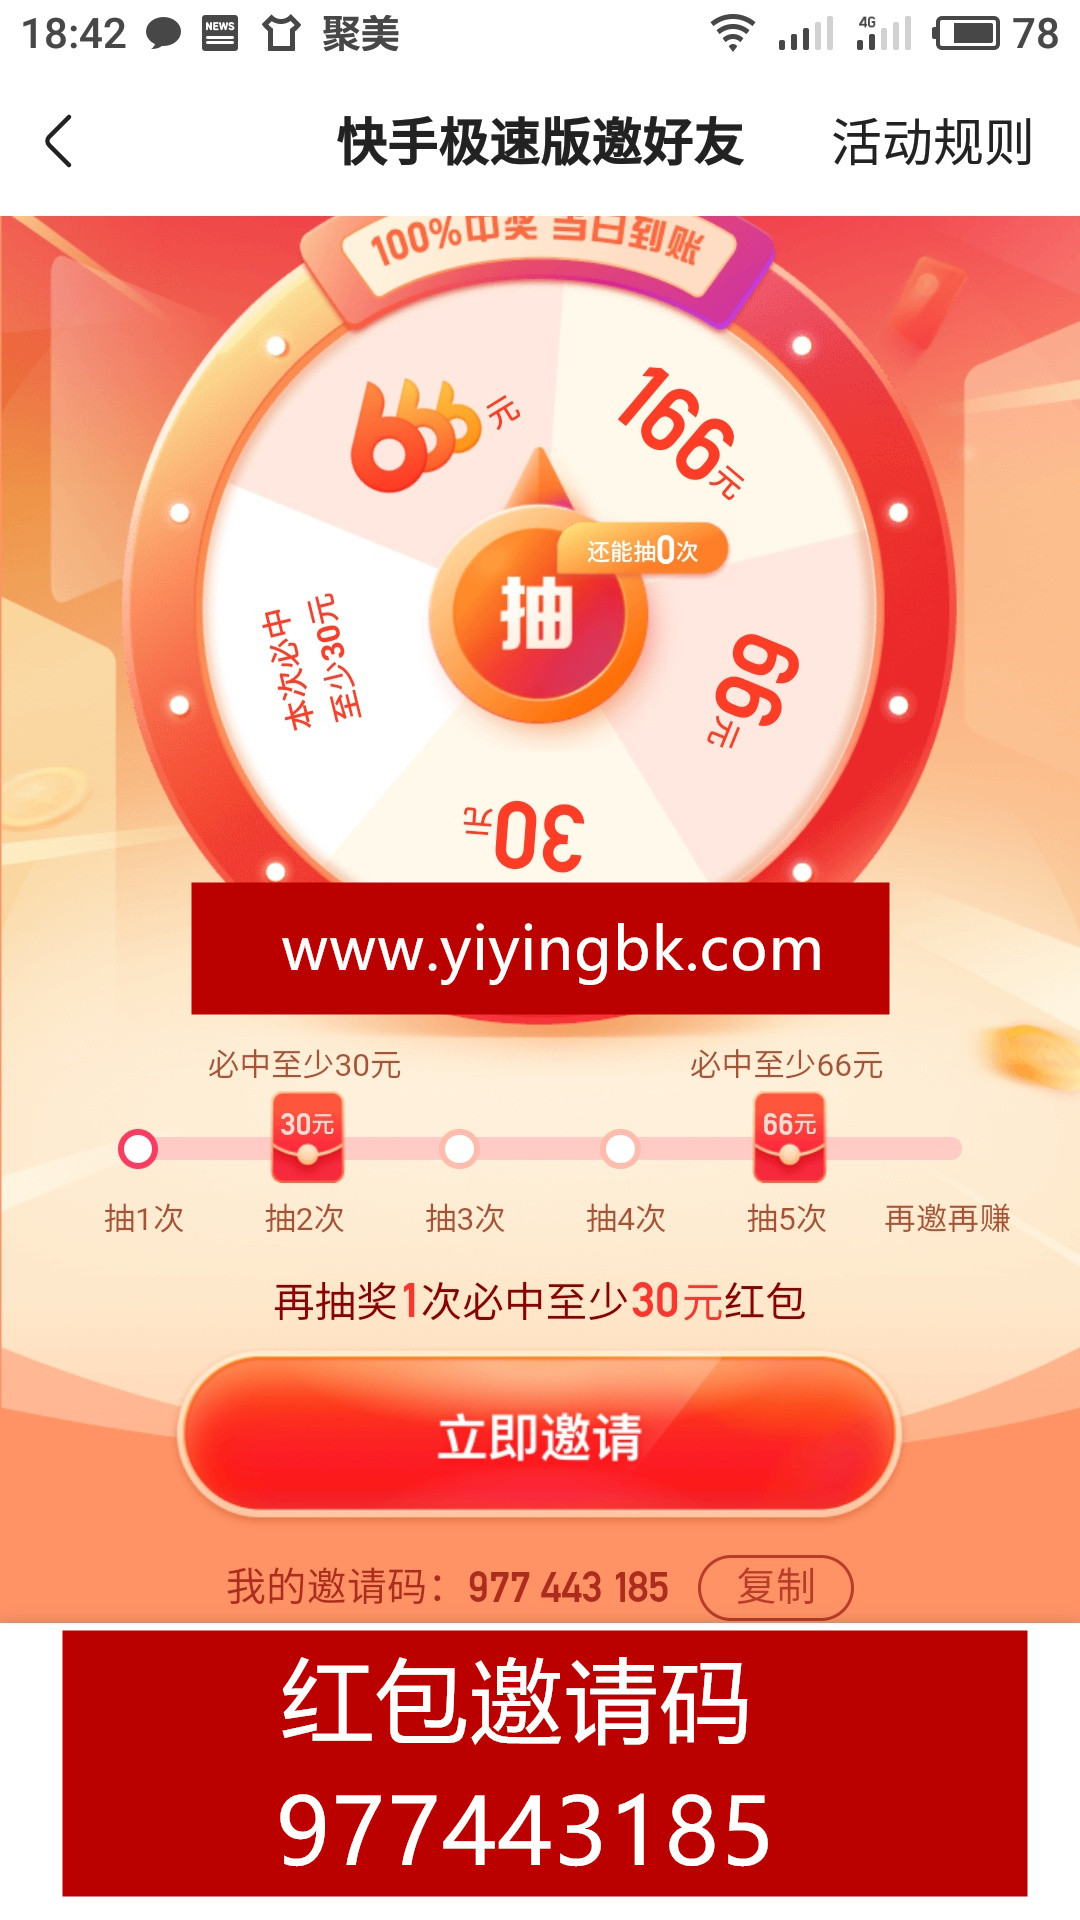 快手极速版免费抽红包，直接提现秒到账，www.yiyingbk.com